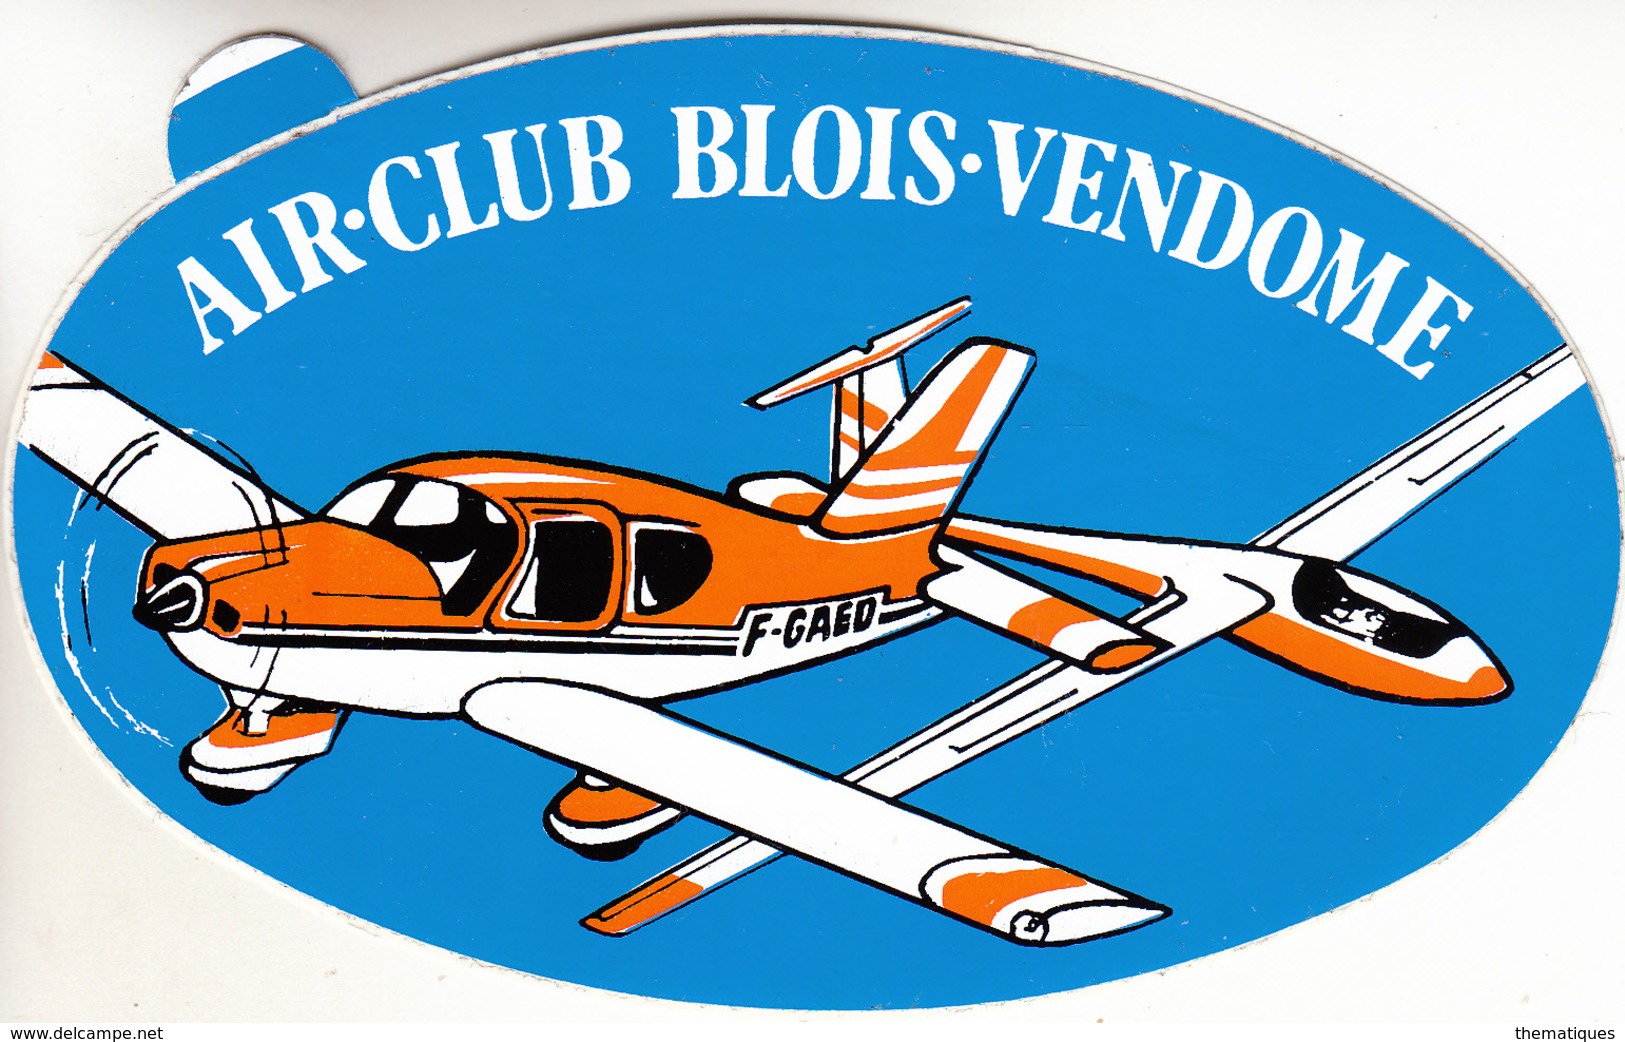 Thematiques Aviation Autocollant Sticker Air Club Blois Vendome Avion - Autocollants